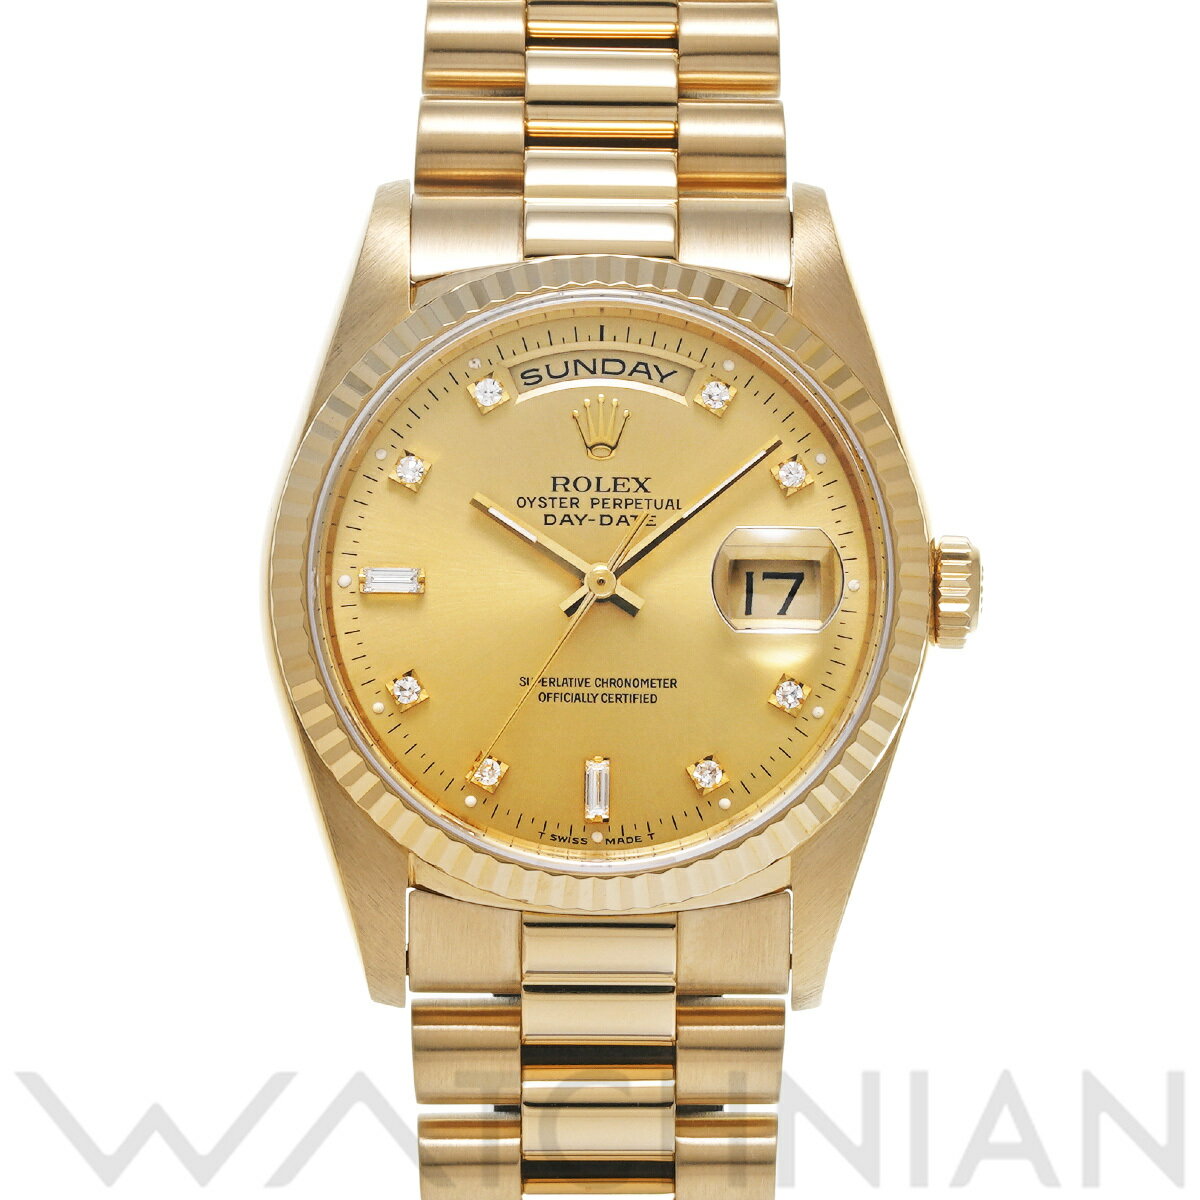 【ローン60回払い無金利】【中古】 ロレックス ROLEX デイデイト 18238A X番(1993年頃製造) シャンパン/ダイヤモンド メンズ 腕時計 ロレックス 時計 高級腕時計 ブランド